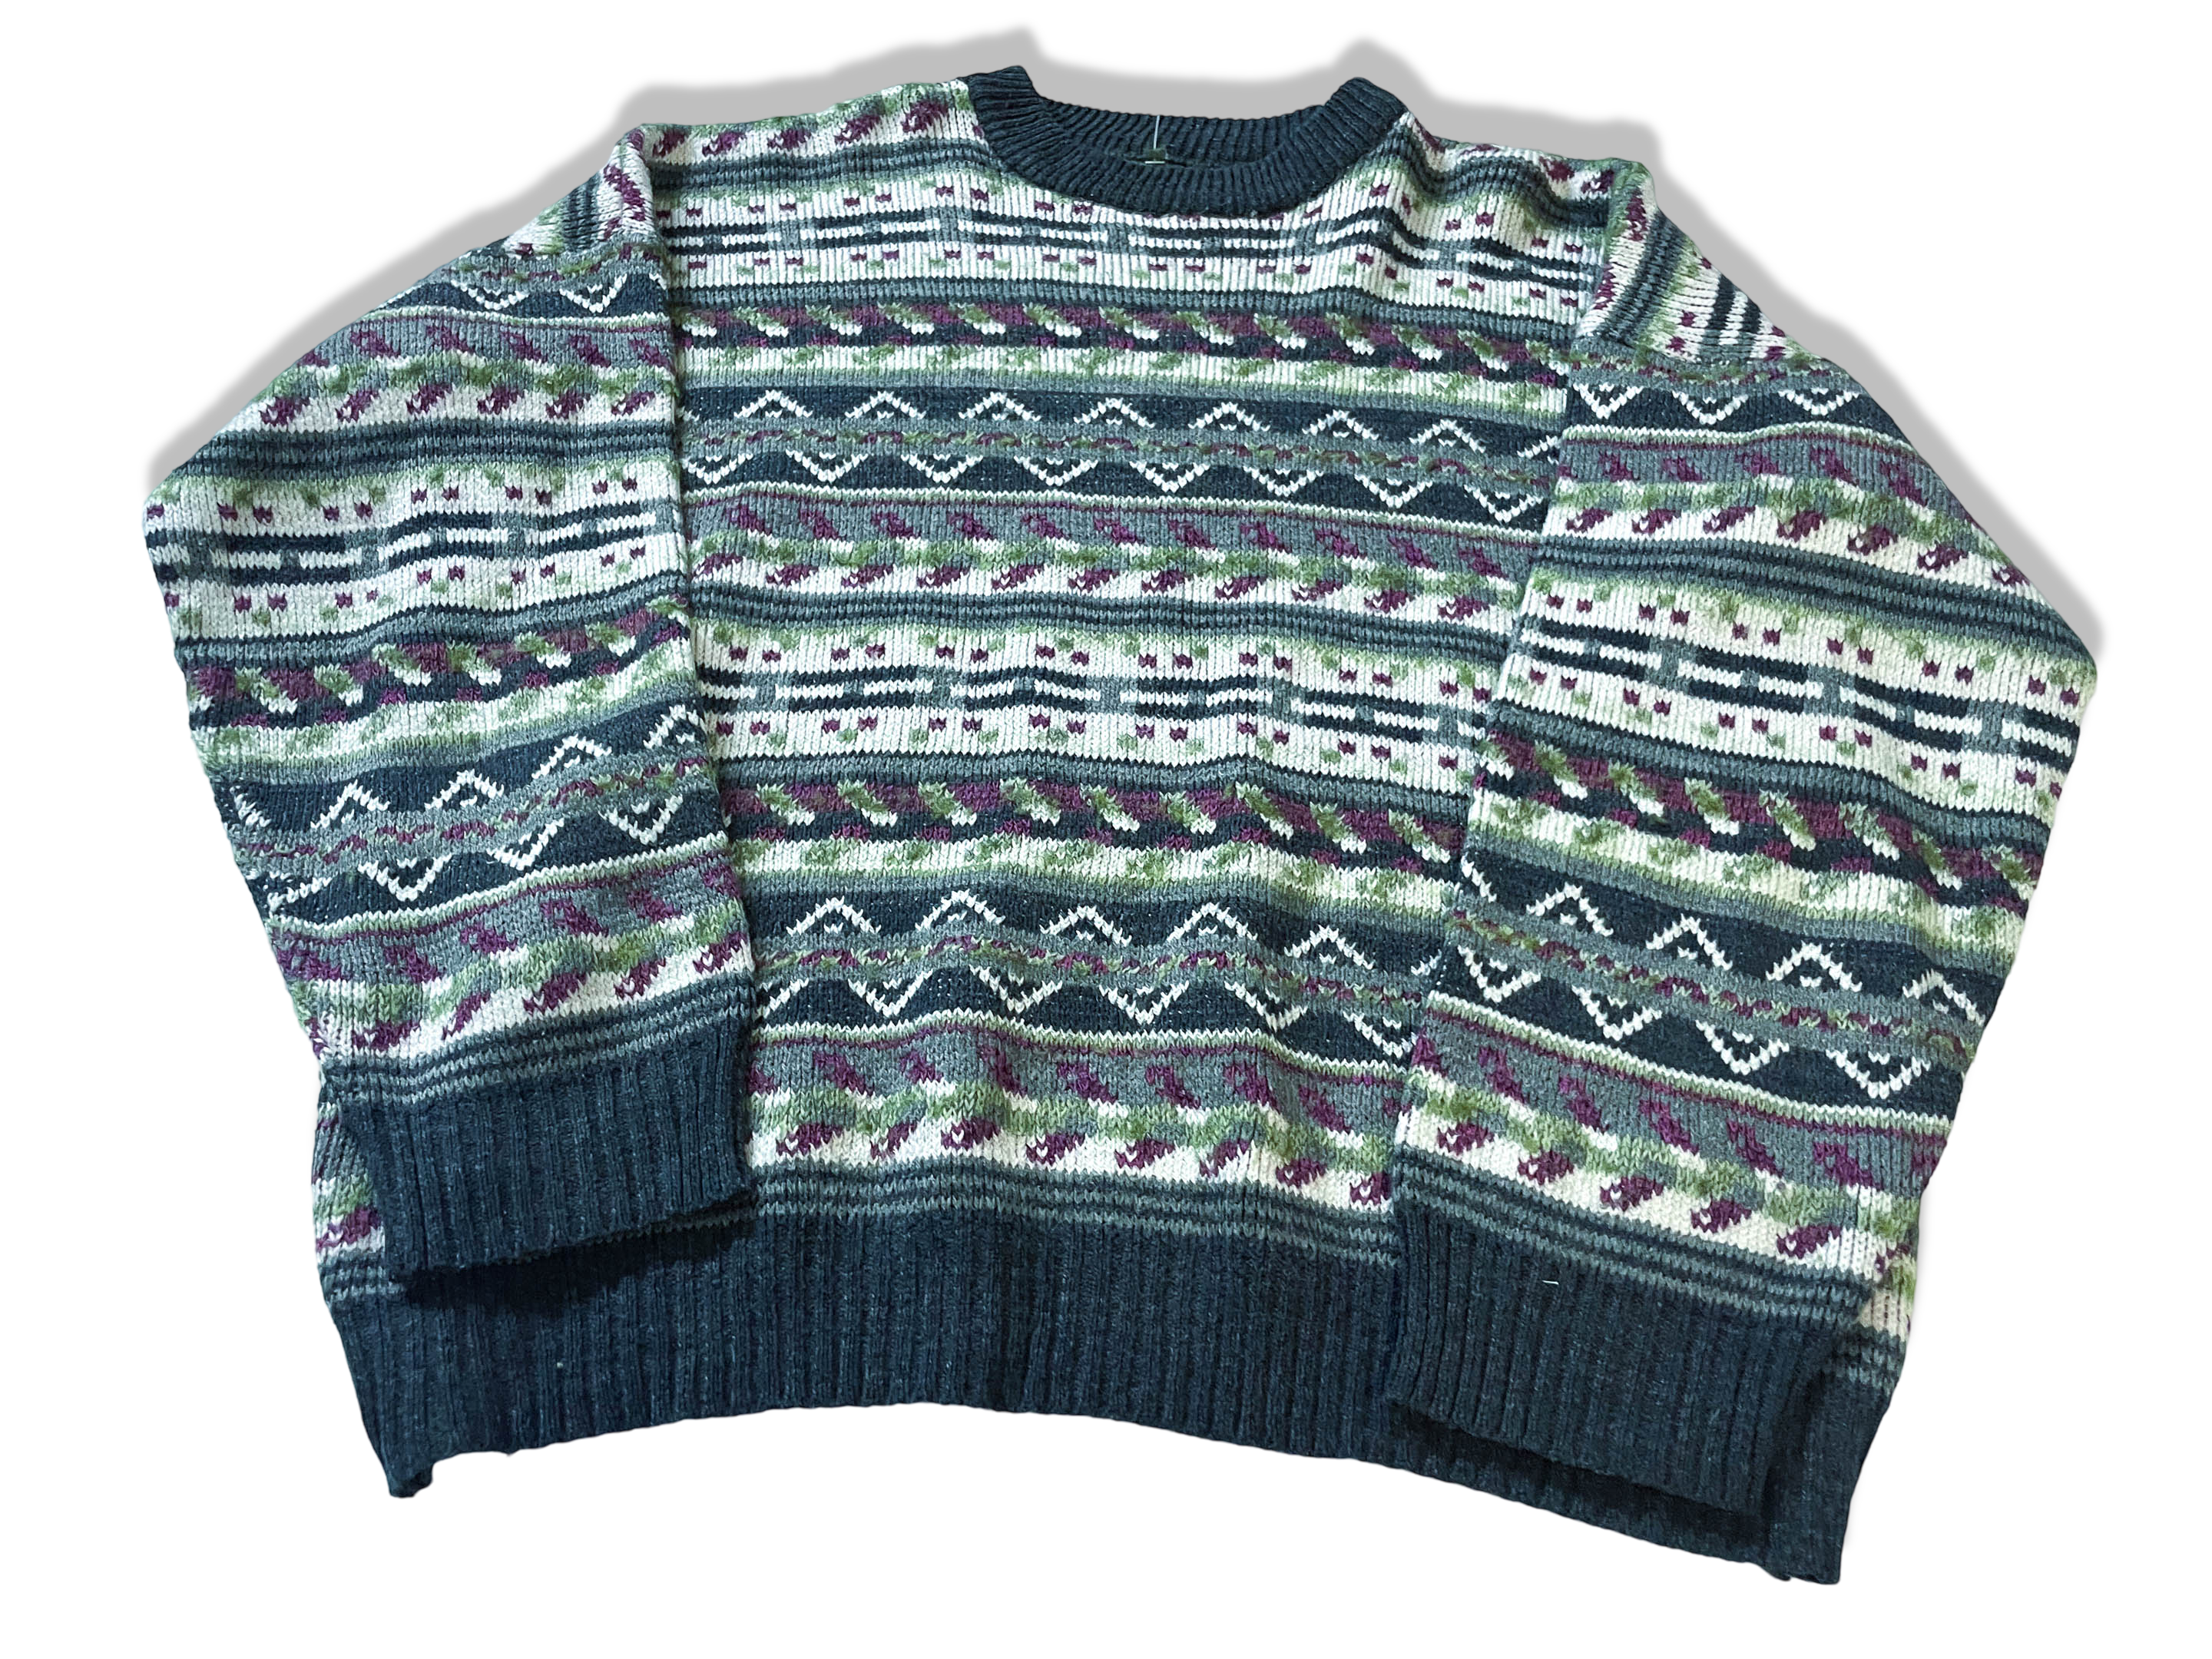 Vintage Multi stripe geometric pattern knitted crew neck sweater in S/M|L25 W24| SKU 3989